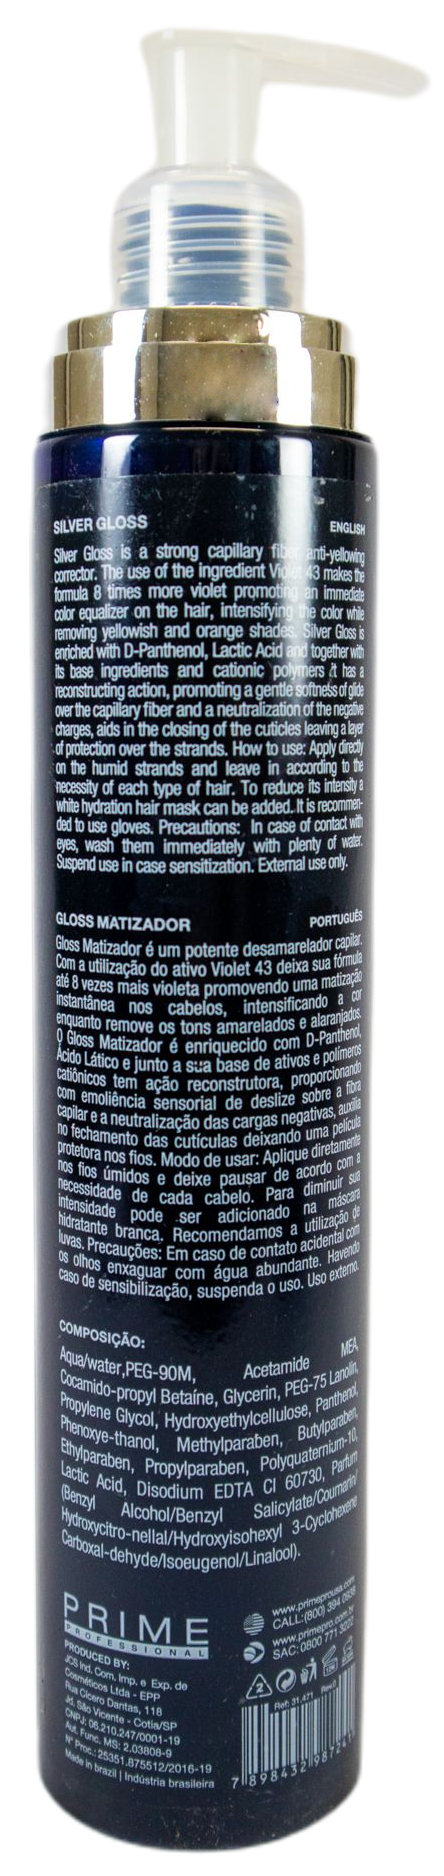 Prime Pro Extreme Brazilian Keratin Treatment Profit of Color Blond Silver Toning Kit 2 Products - Prime Pro